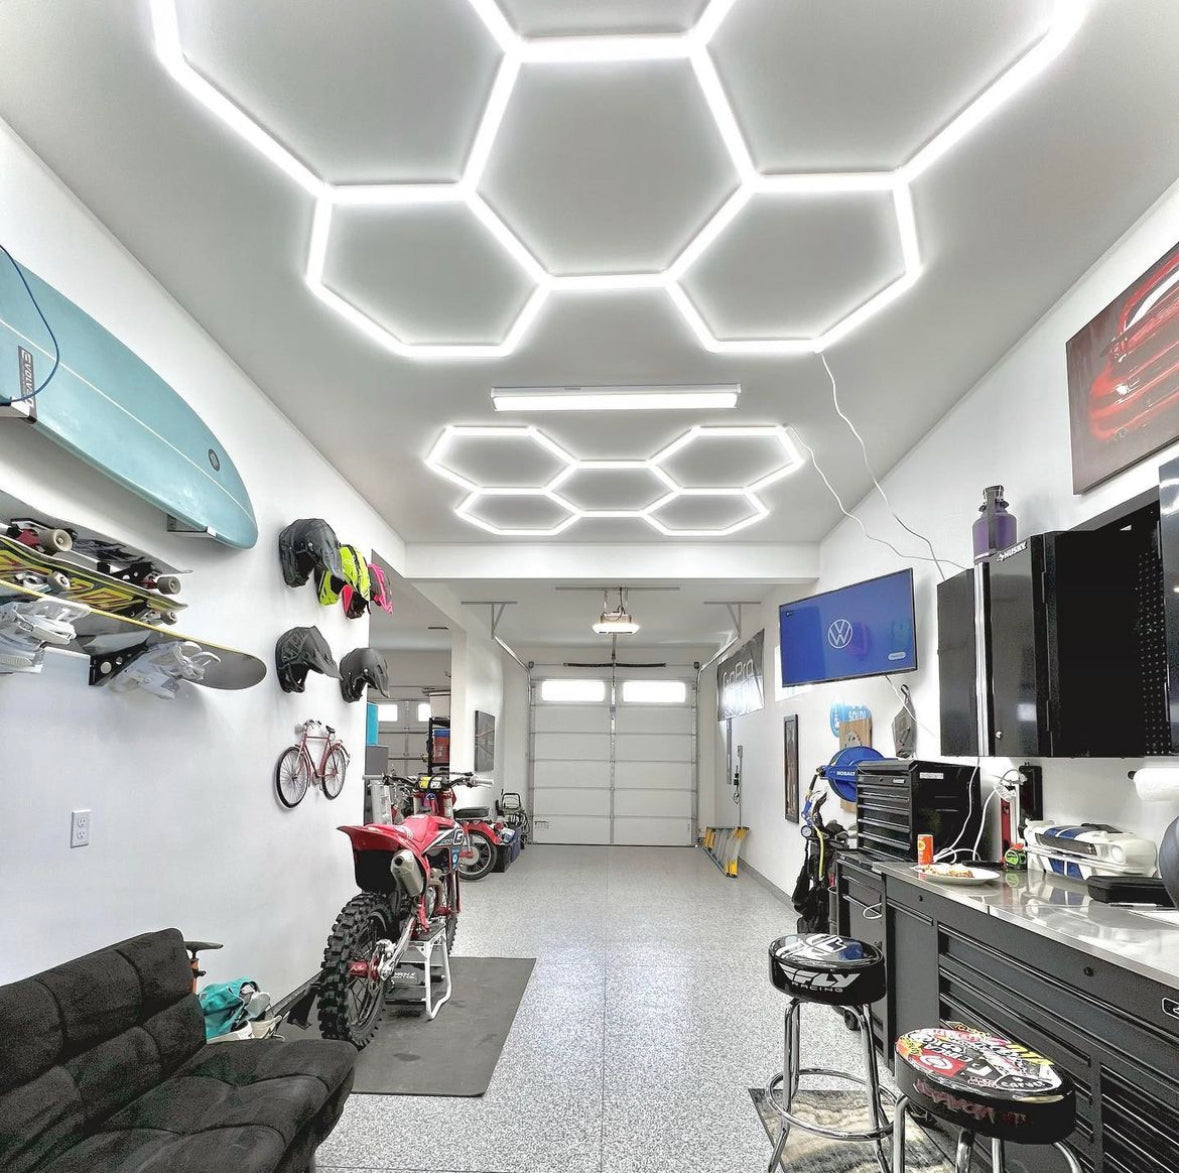 LED Hexagon Lights - LED Hexagon Garage Lights, 548W 65760 Lumen, Hexagon  Ceiling Lighting, Cool White Light 6500K, for Garage Gym Barber Shop